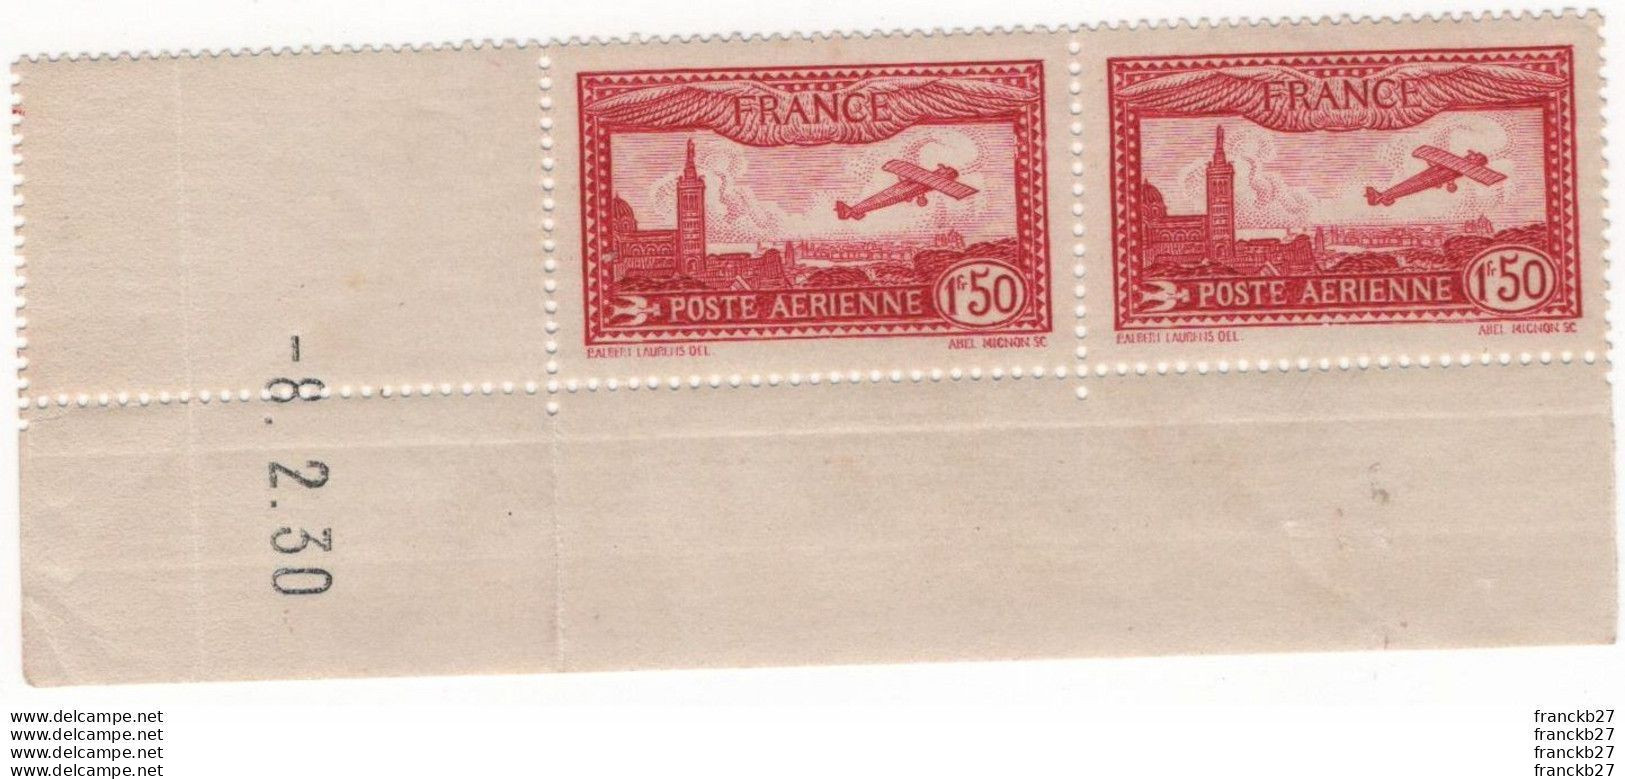 France Poste Aérienne - YT 5 - Avion Survolant Marseille 1 Fr 50 - Bloc De Deux Timbres Coins Datés - 1930 - 1927-1959 Neufs